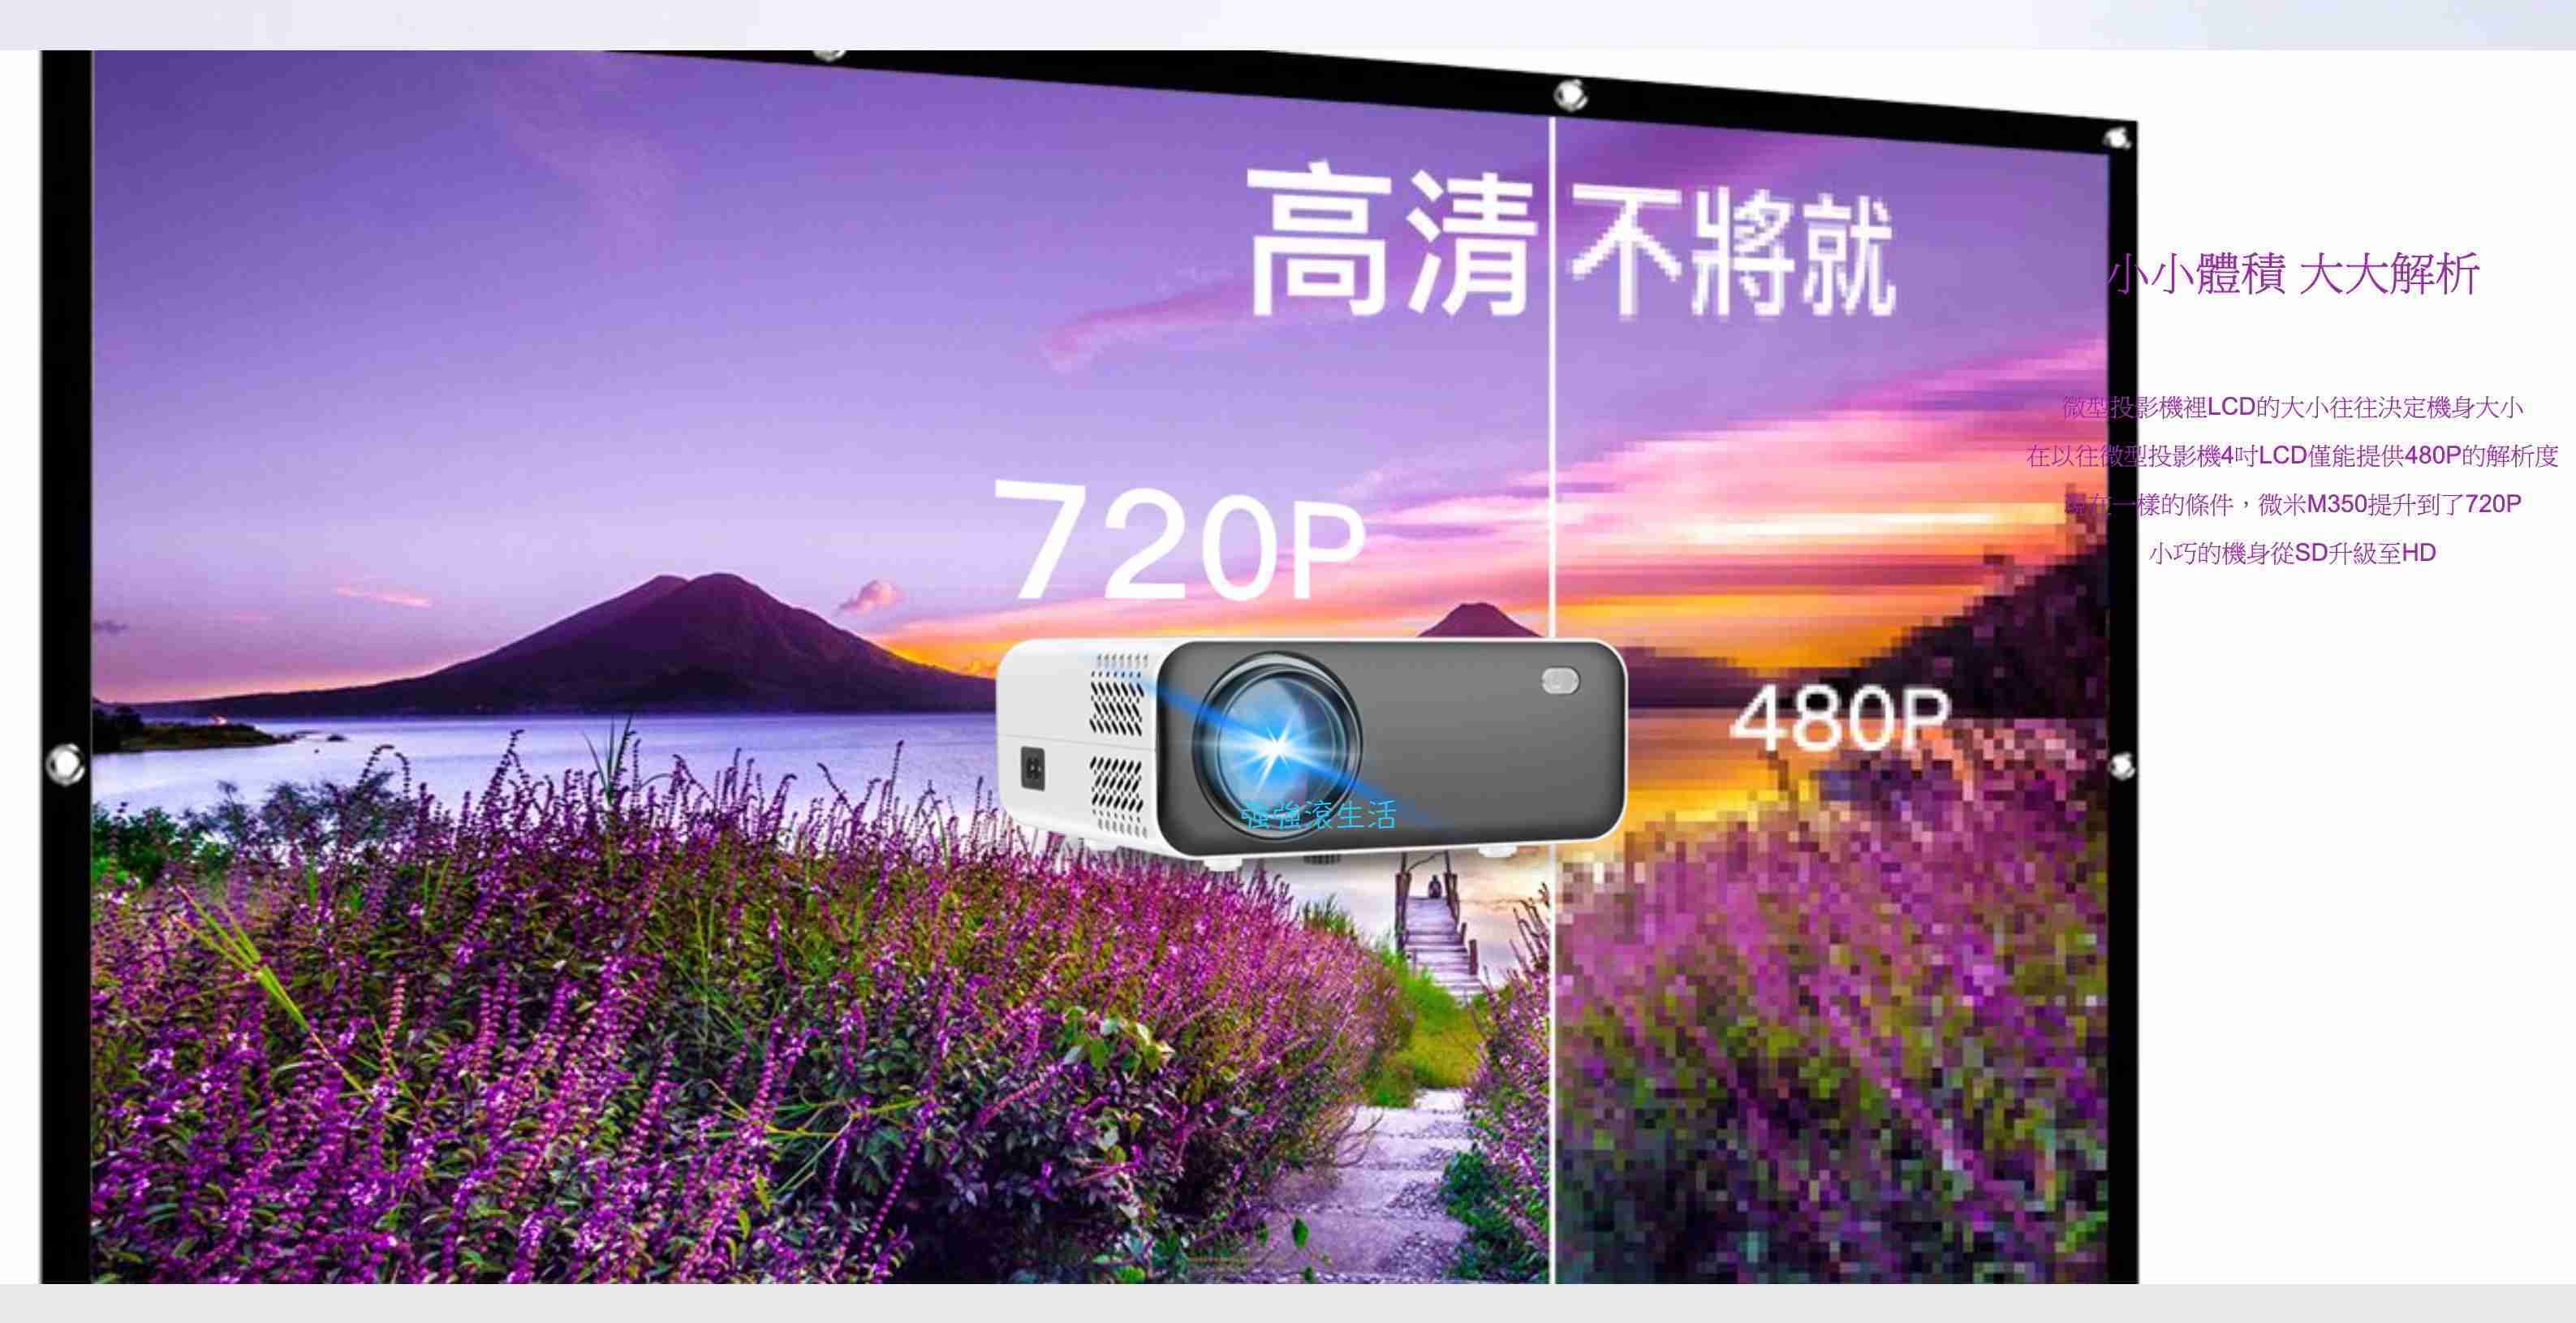 強強滾生活 微米M350投影機 720P微型投影機 露營投影機 手機 遊戲電玩 隨身電視 簡報 小型投影